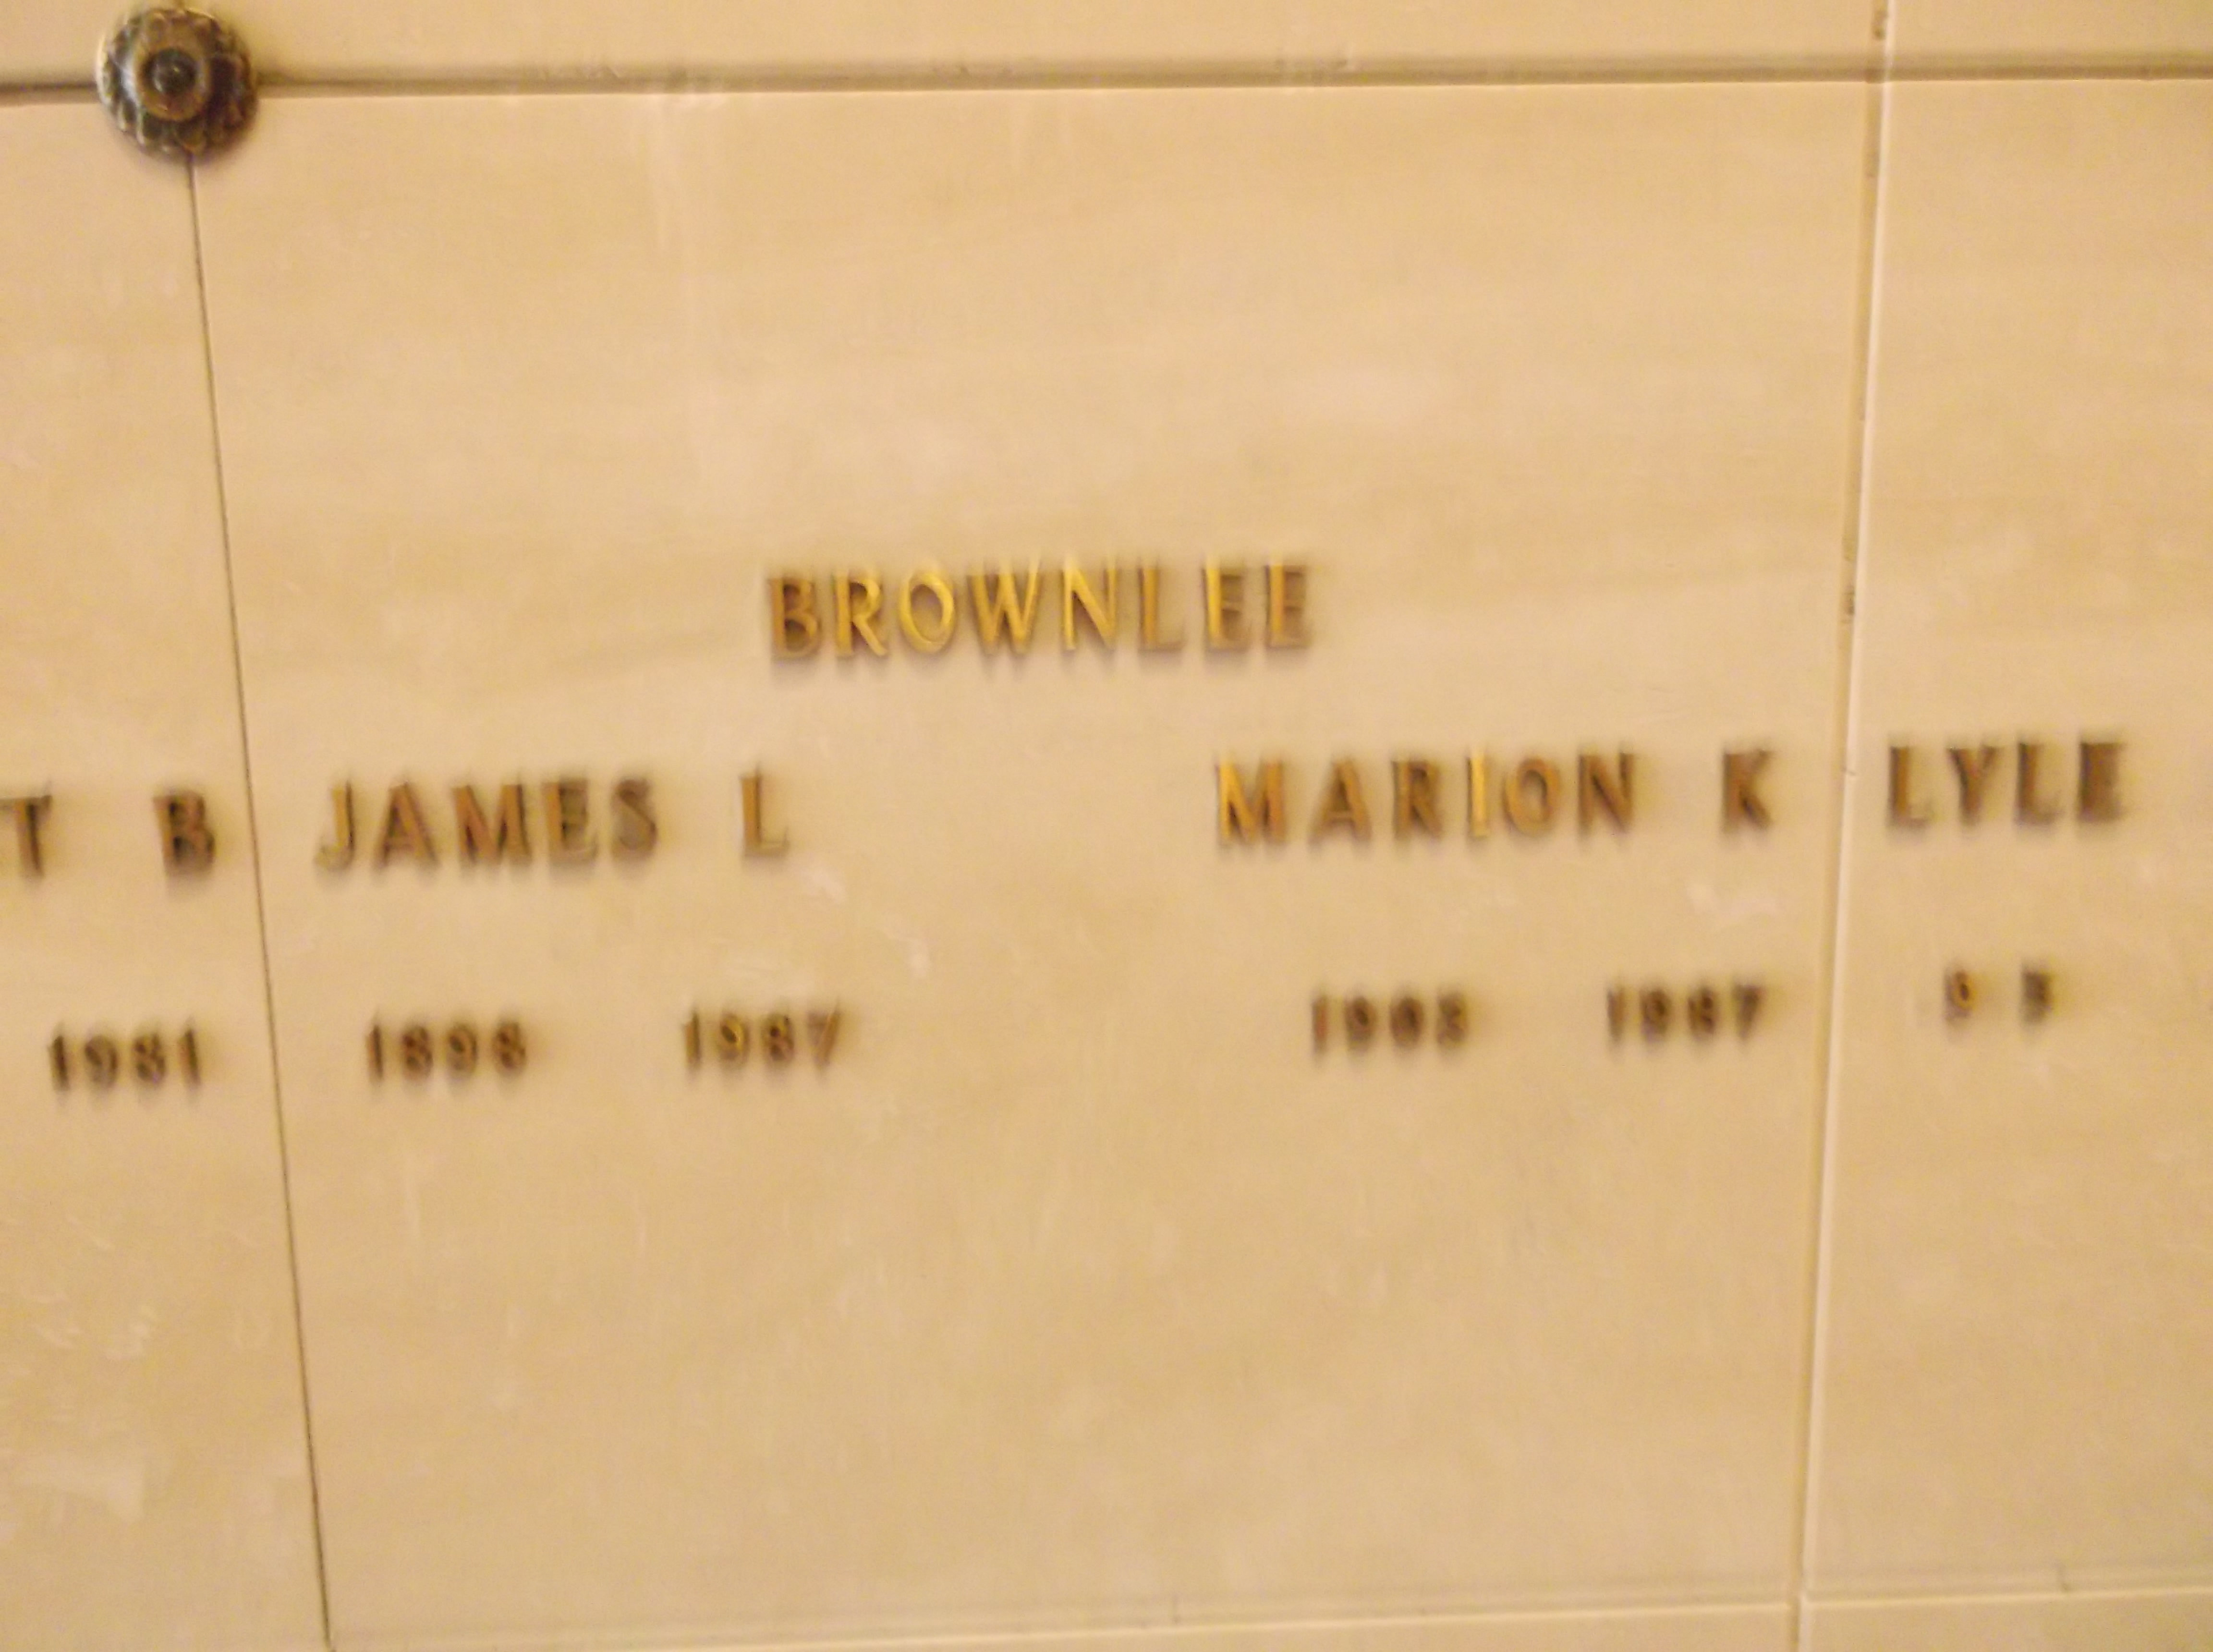 James L Brownlee